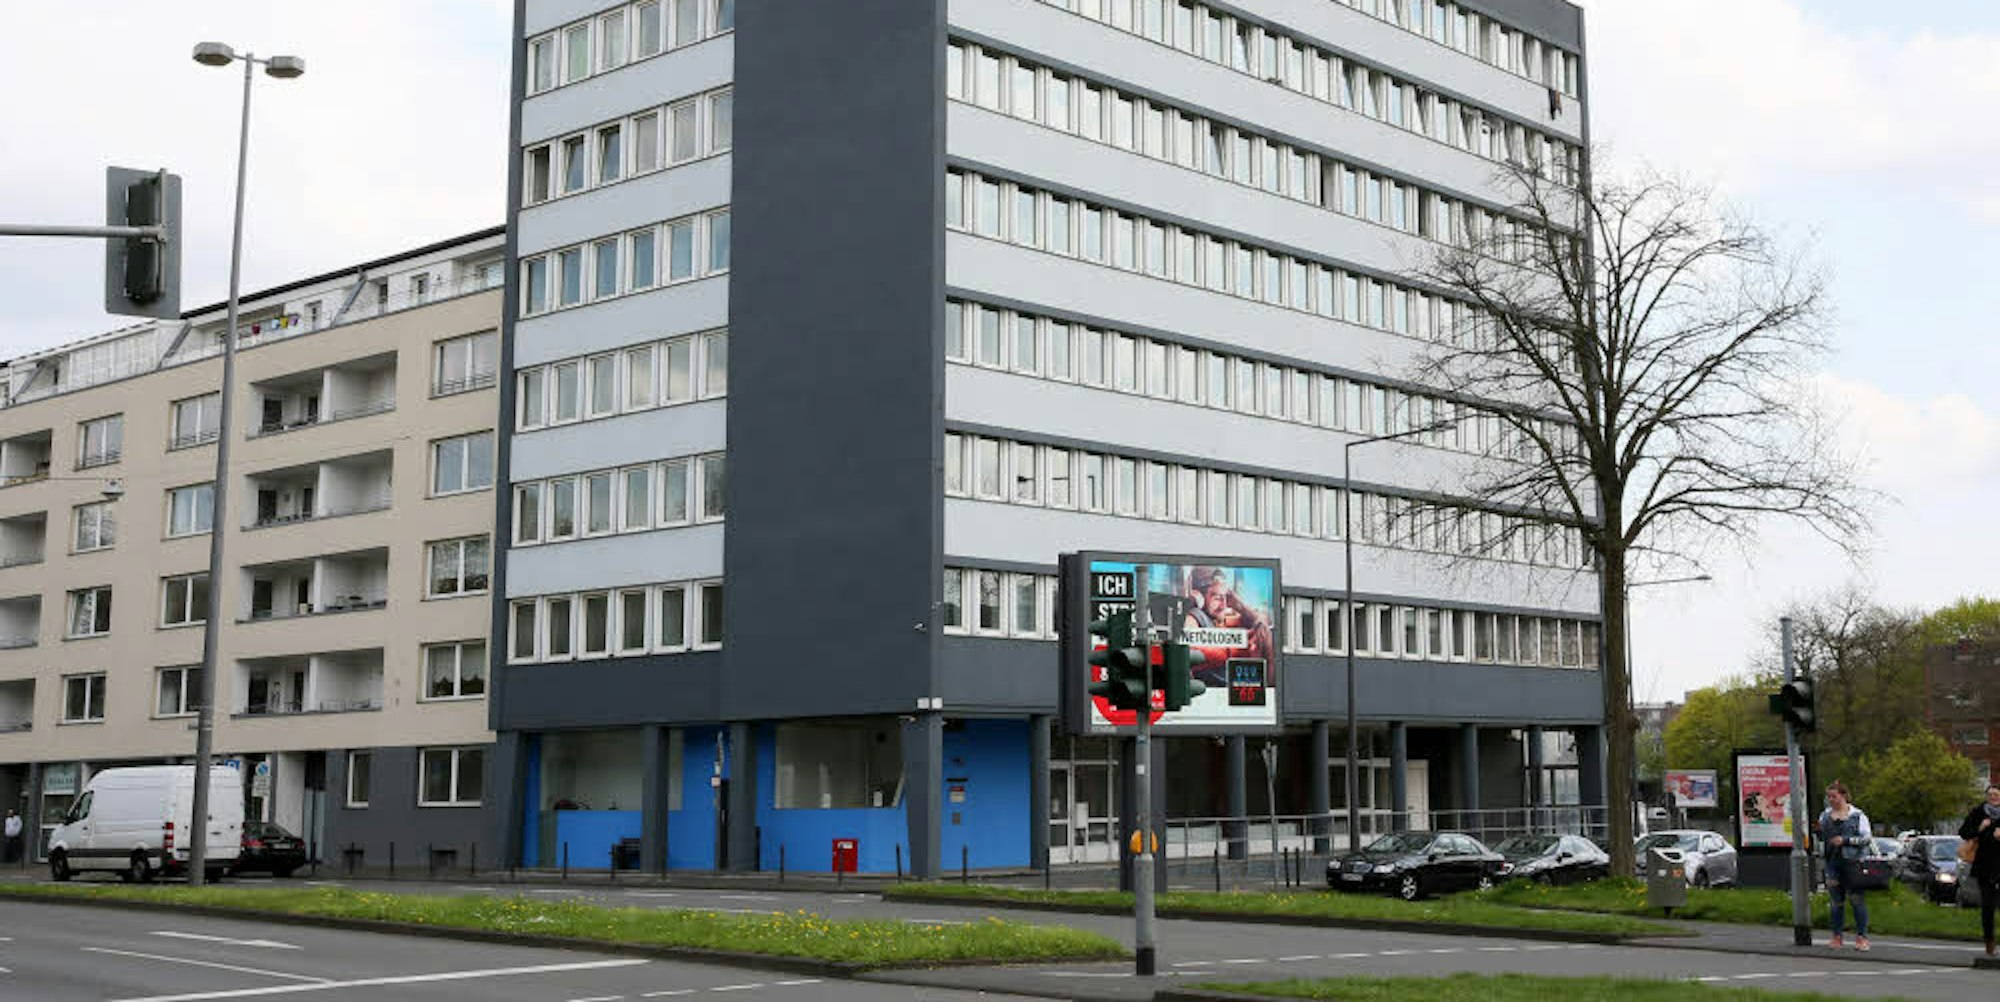 Das Blue Hotel am Blaubach in der Innenstadt ist eine der Flüchtlingsunterkünfte in Köln.